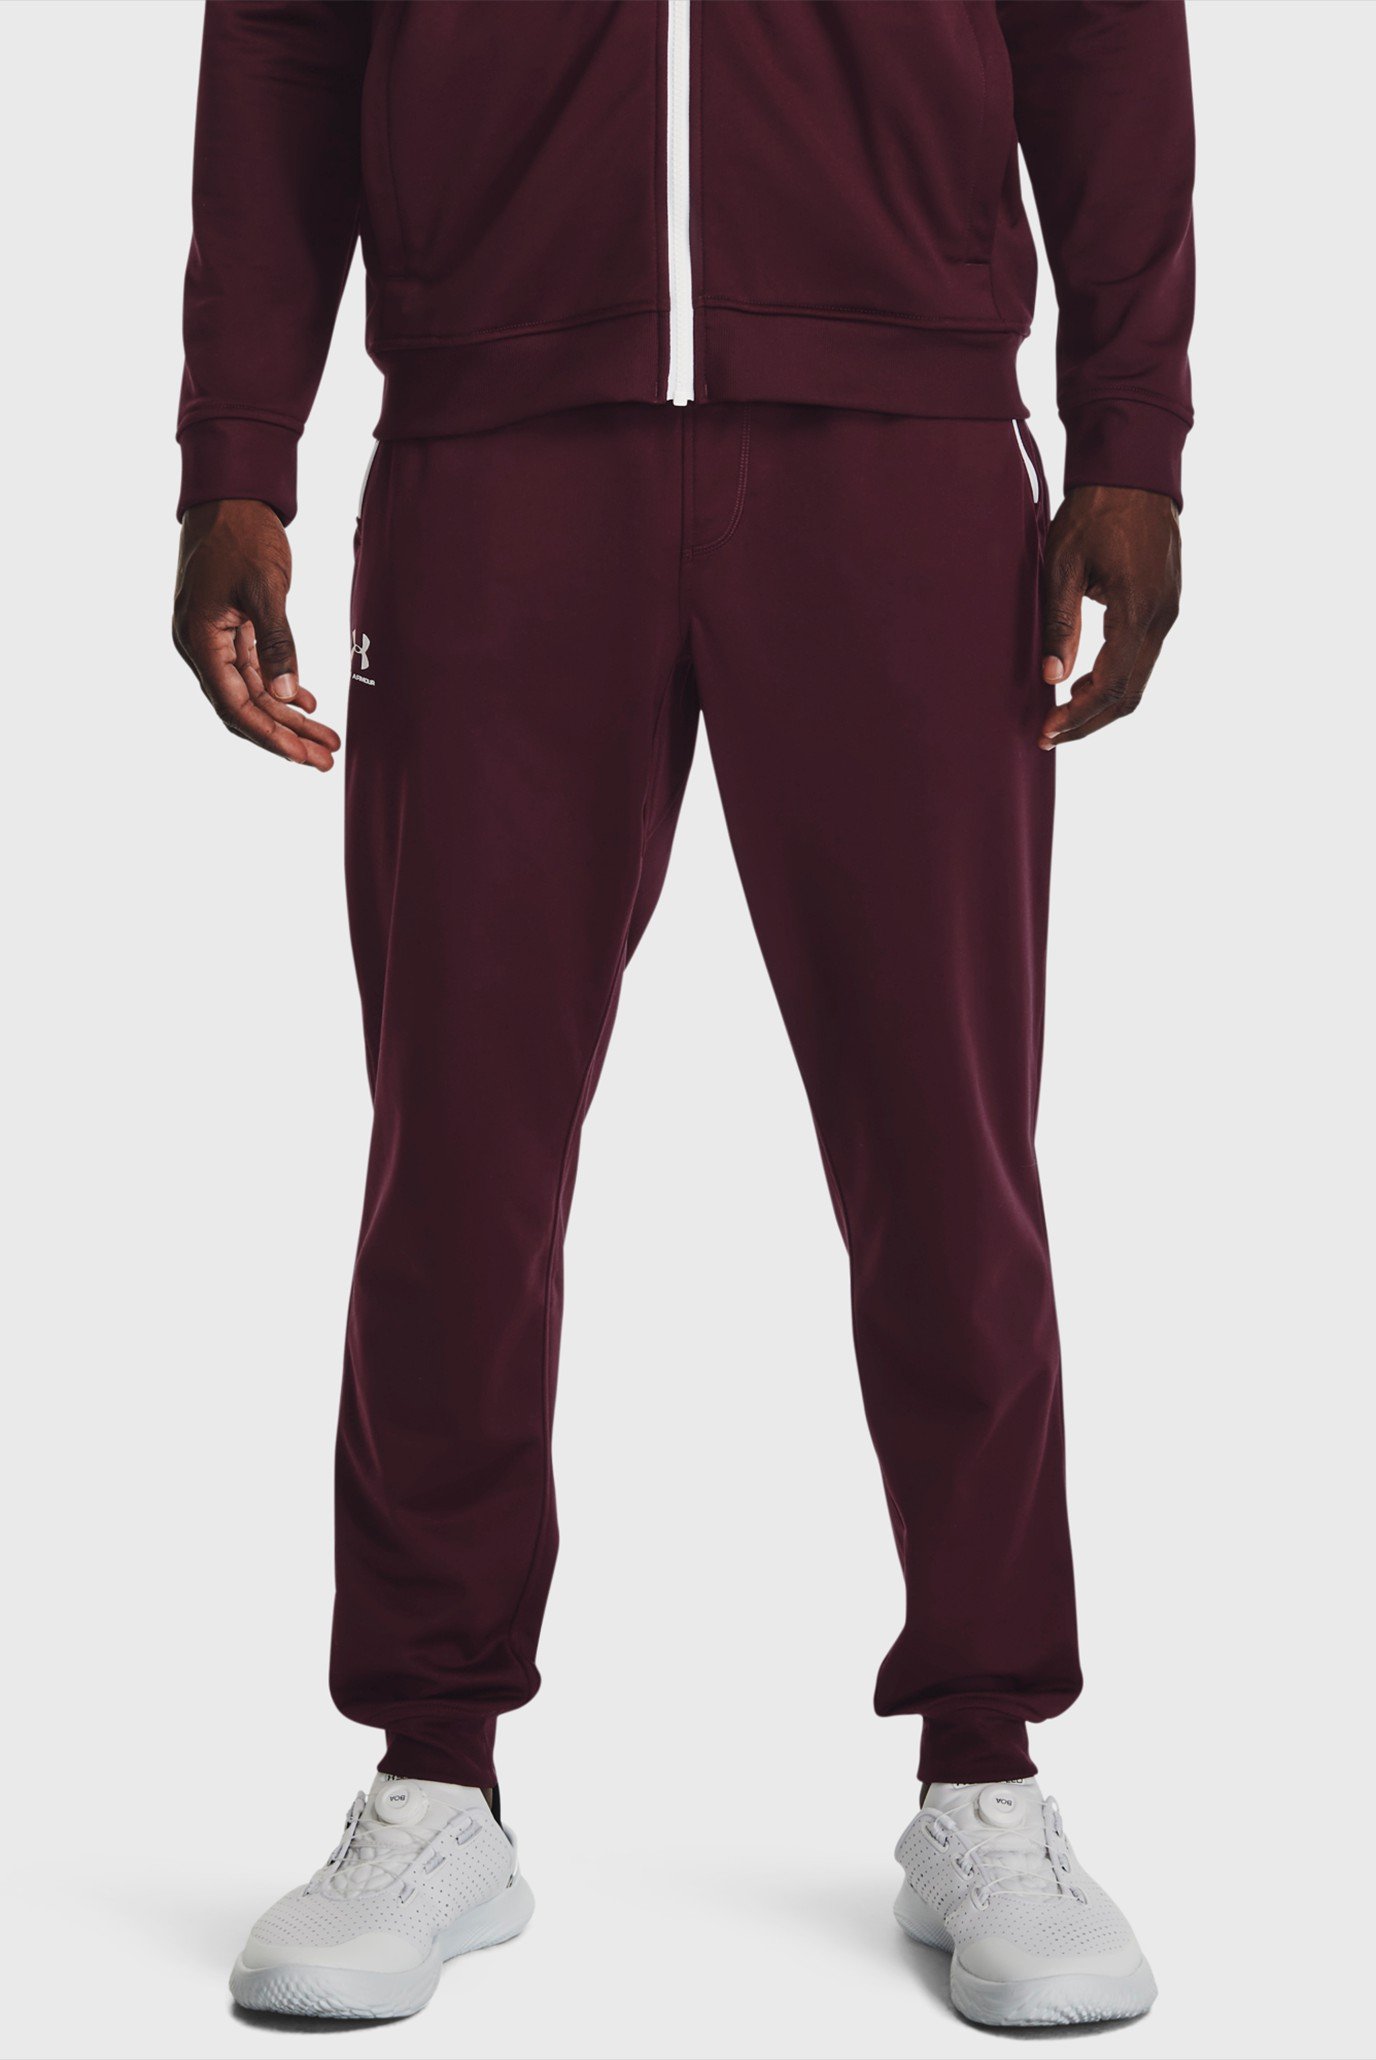 Чоловічі бордові спортивні штани SPORTSTYLE TRICOT JOGGER 1